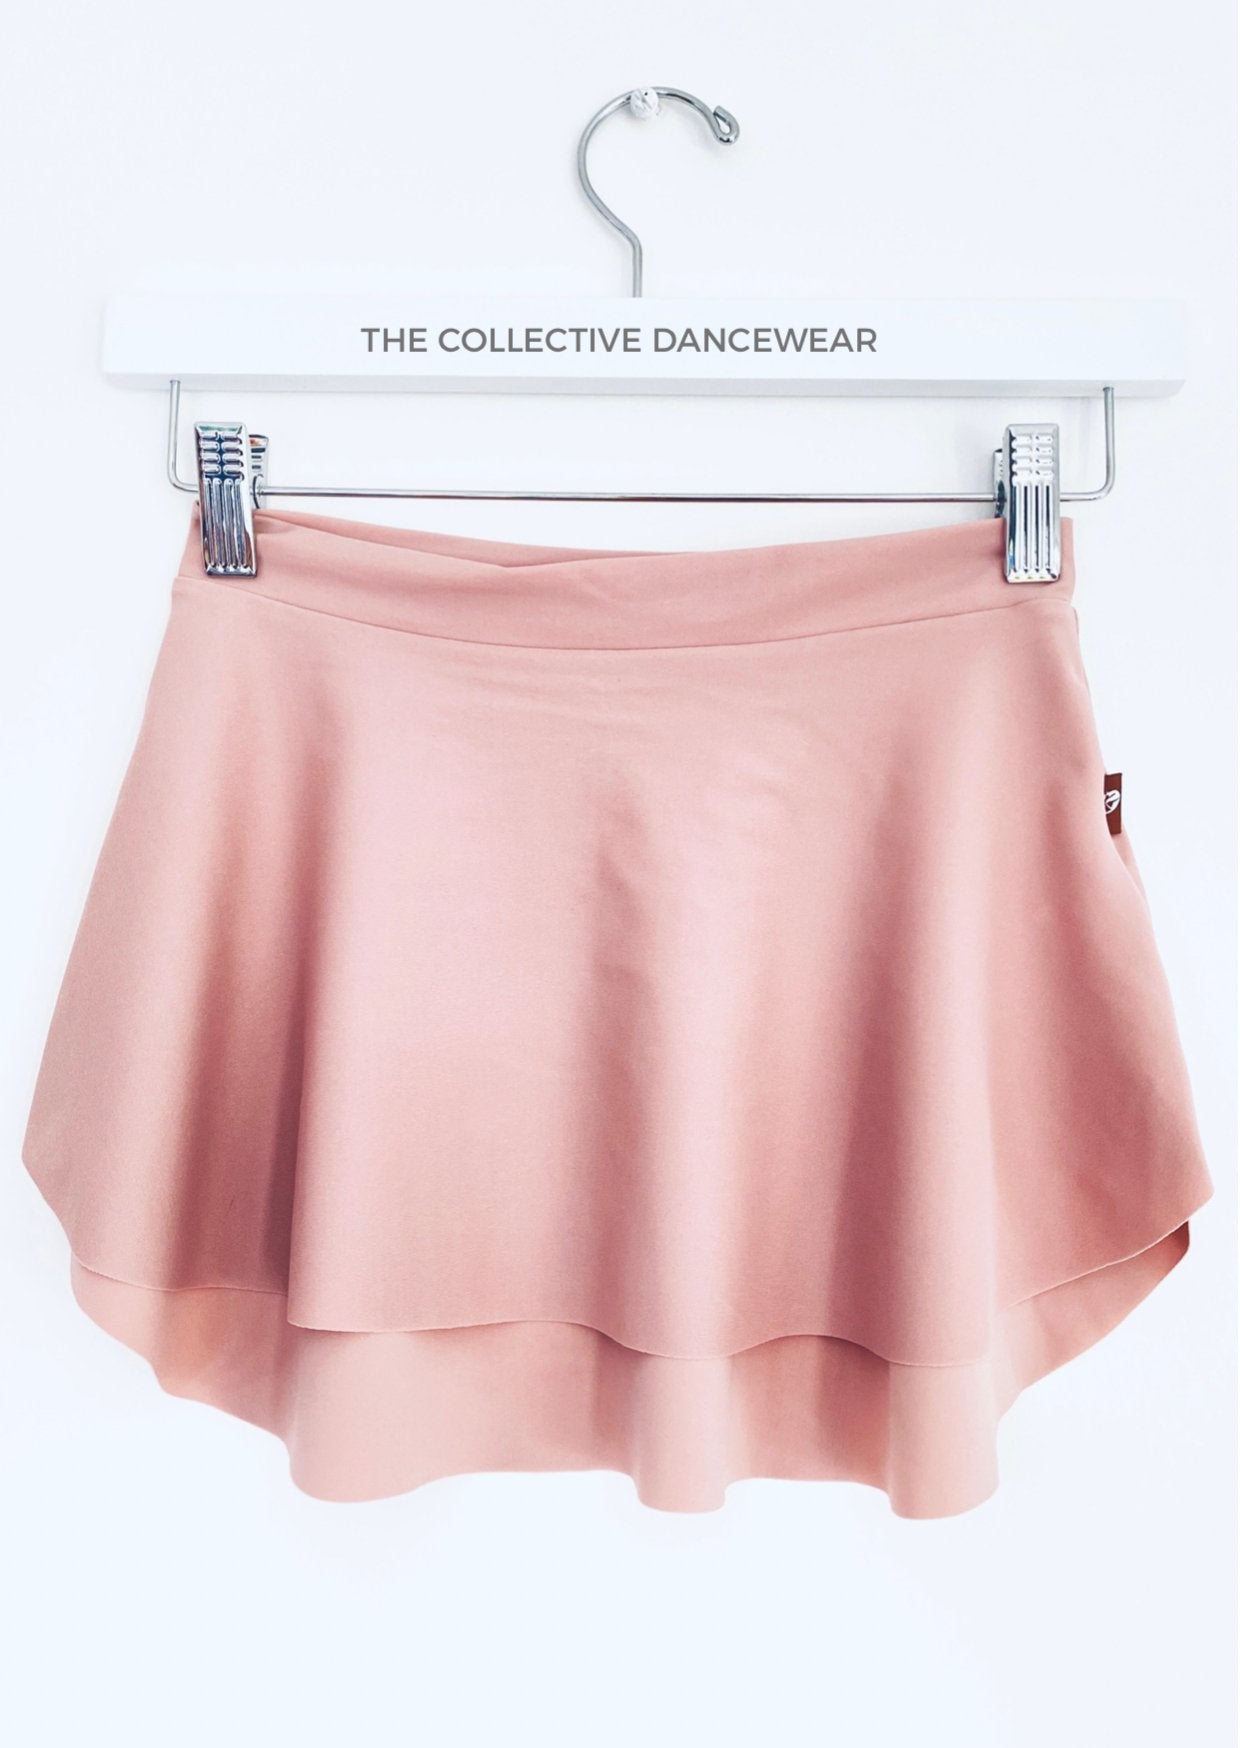 SAB Skirt Dusky Pink - THE COLLECTIVE DANCEWEARSAB Skirt Dusky Pink#mSkirtTHE COLLECTIVE DANCEWEAR